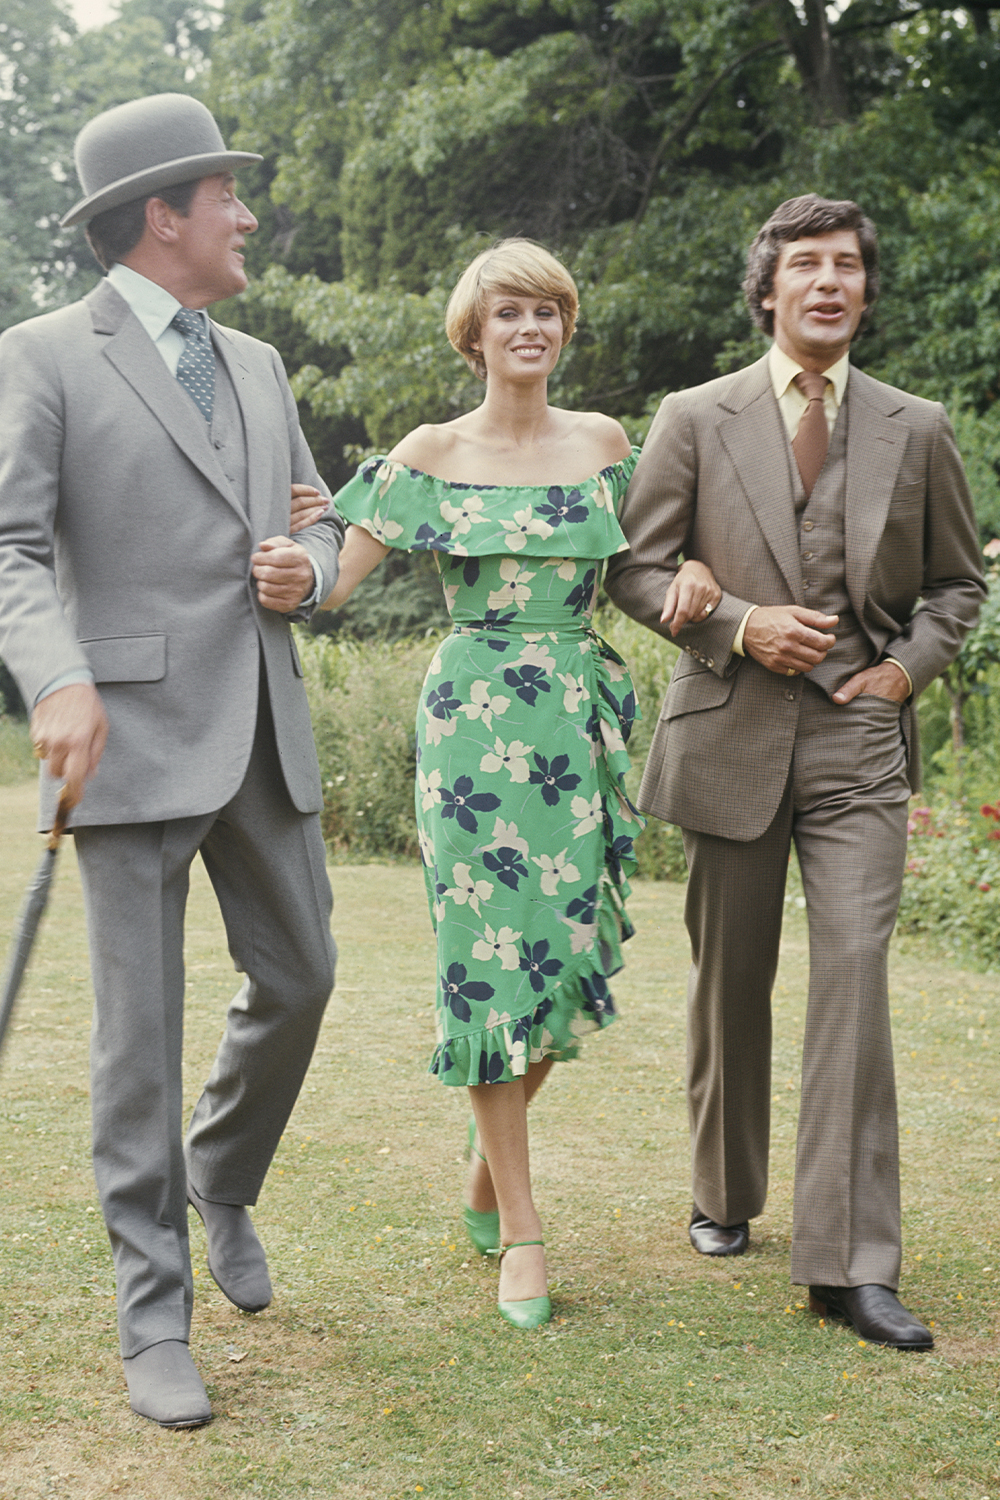 1970 formal wear